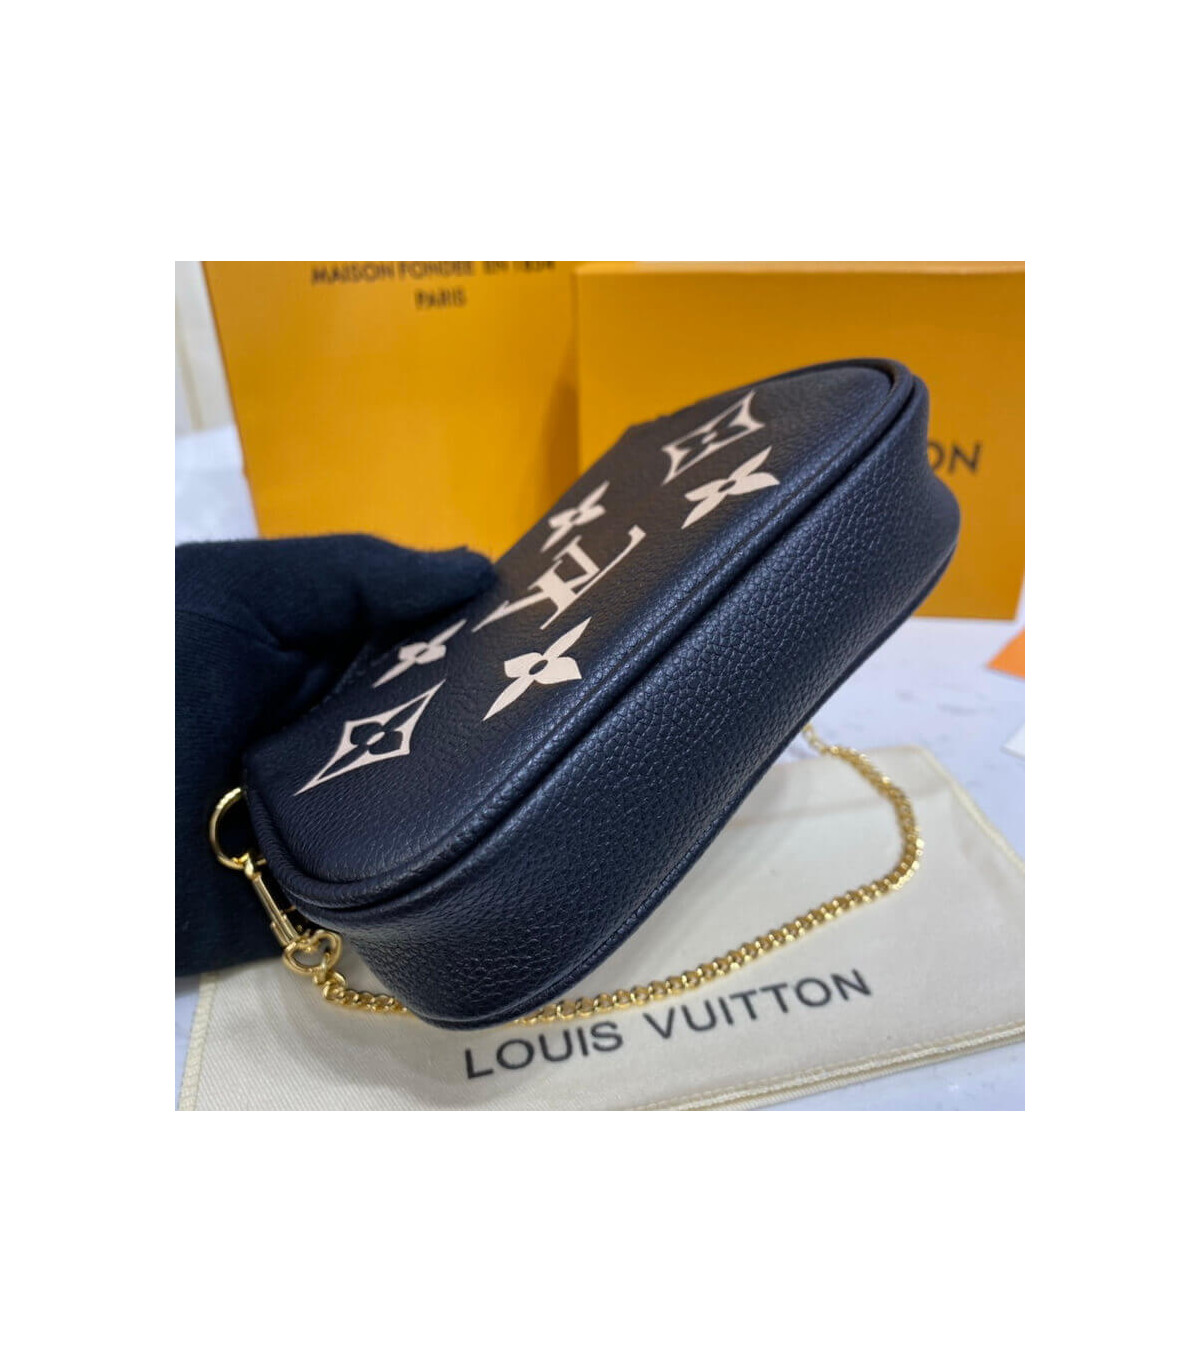 Shop Louis Vuitton MONOGRAM Mini pochette accessoires (M80732) by azure02